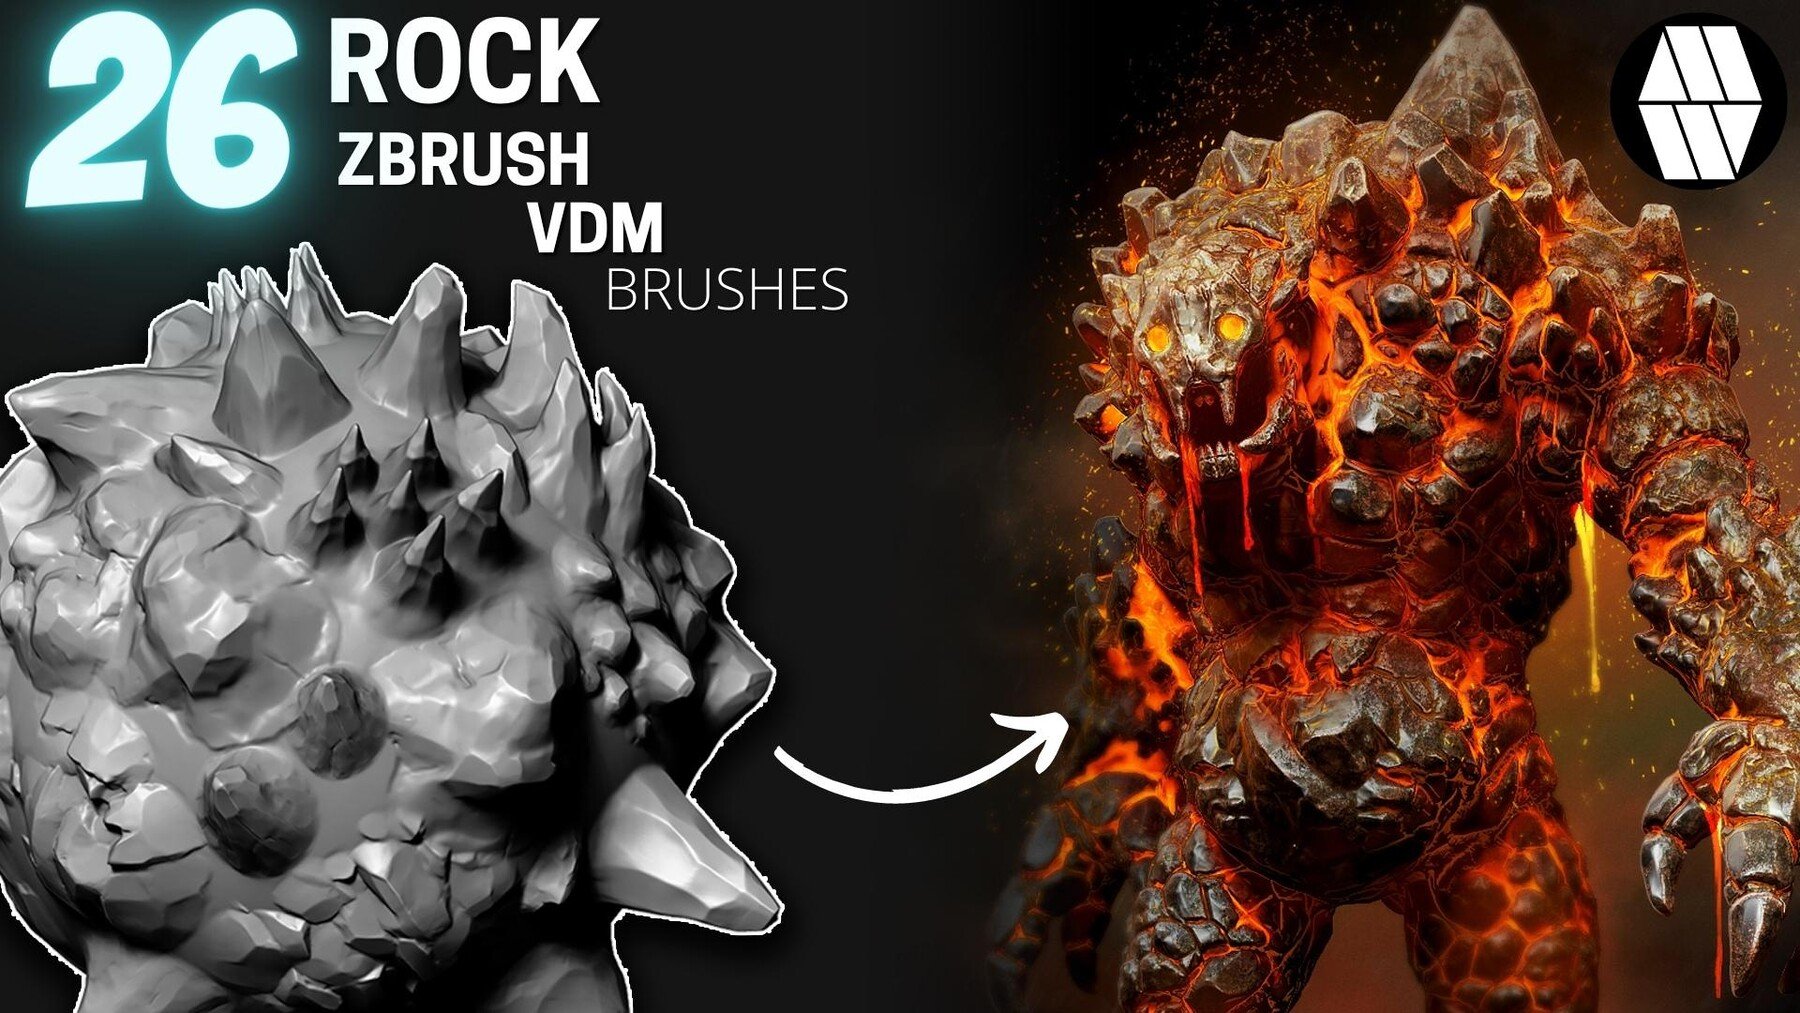 26 ROCK VDM Brush for ZBrush